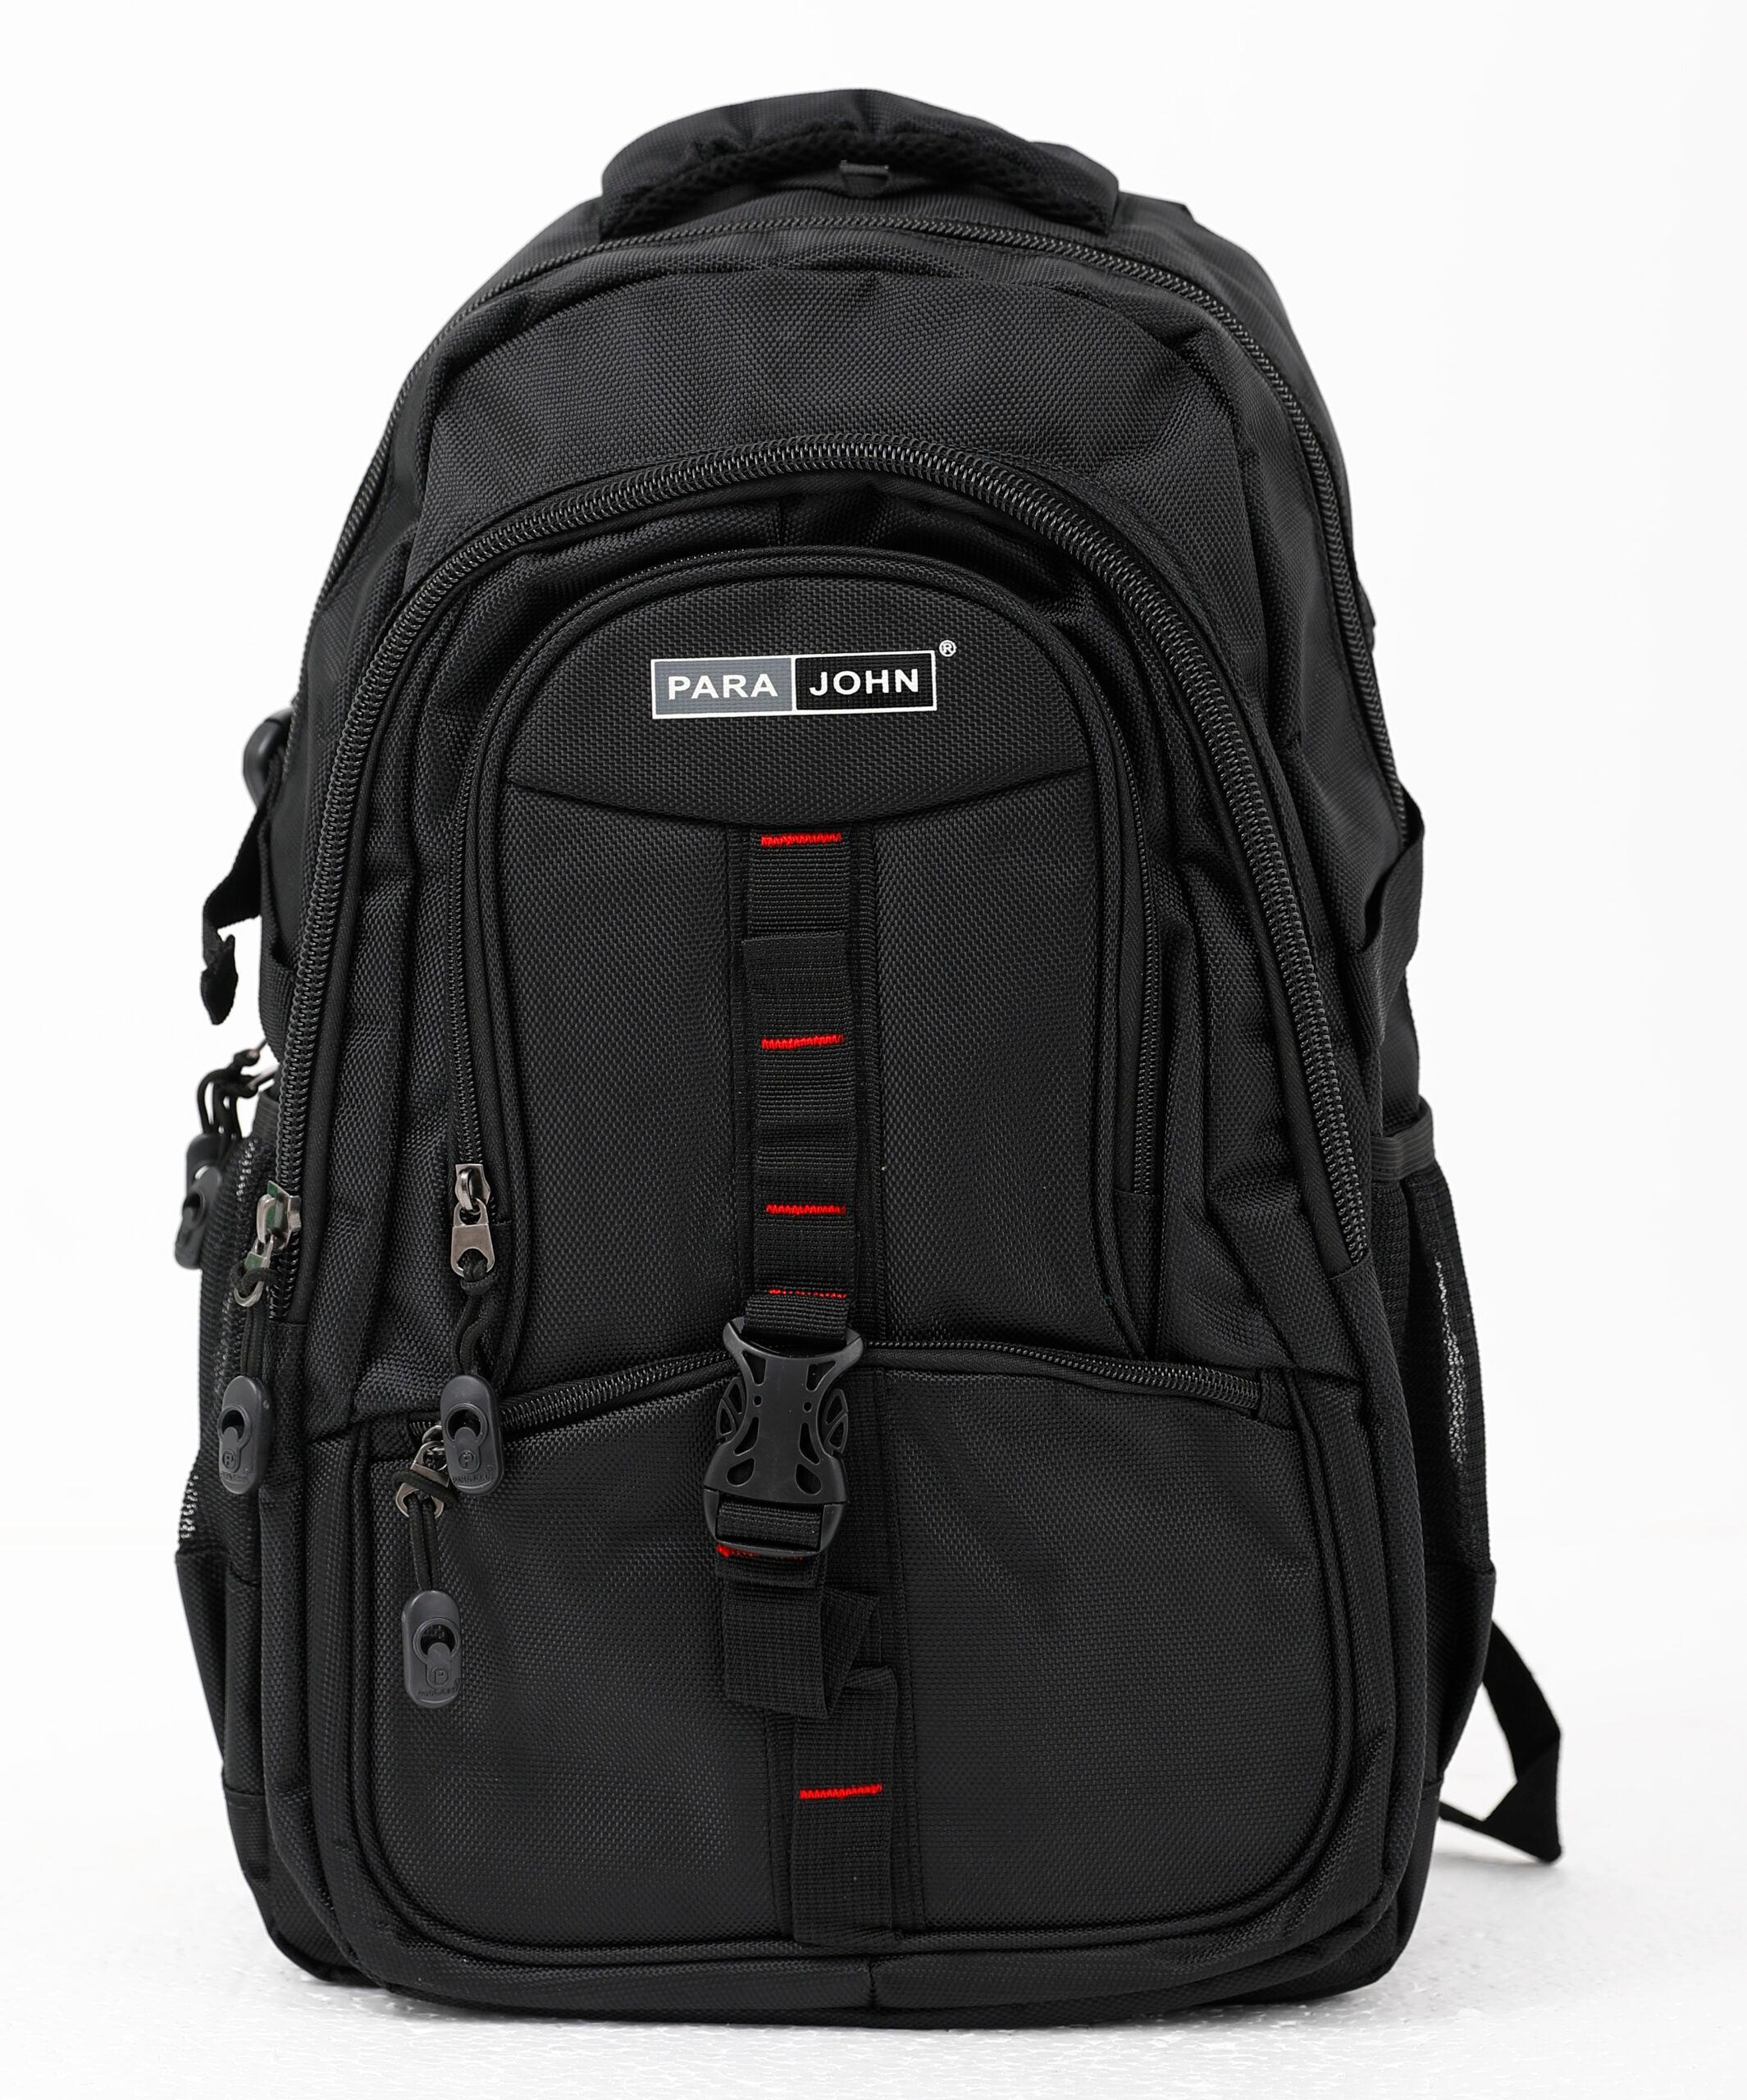 شنطة ظهر متعددة الإستخدامات مقاس 16 – أسود  PARA JOHN Backpack for School, Travel & Work